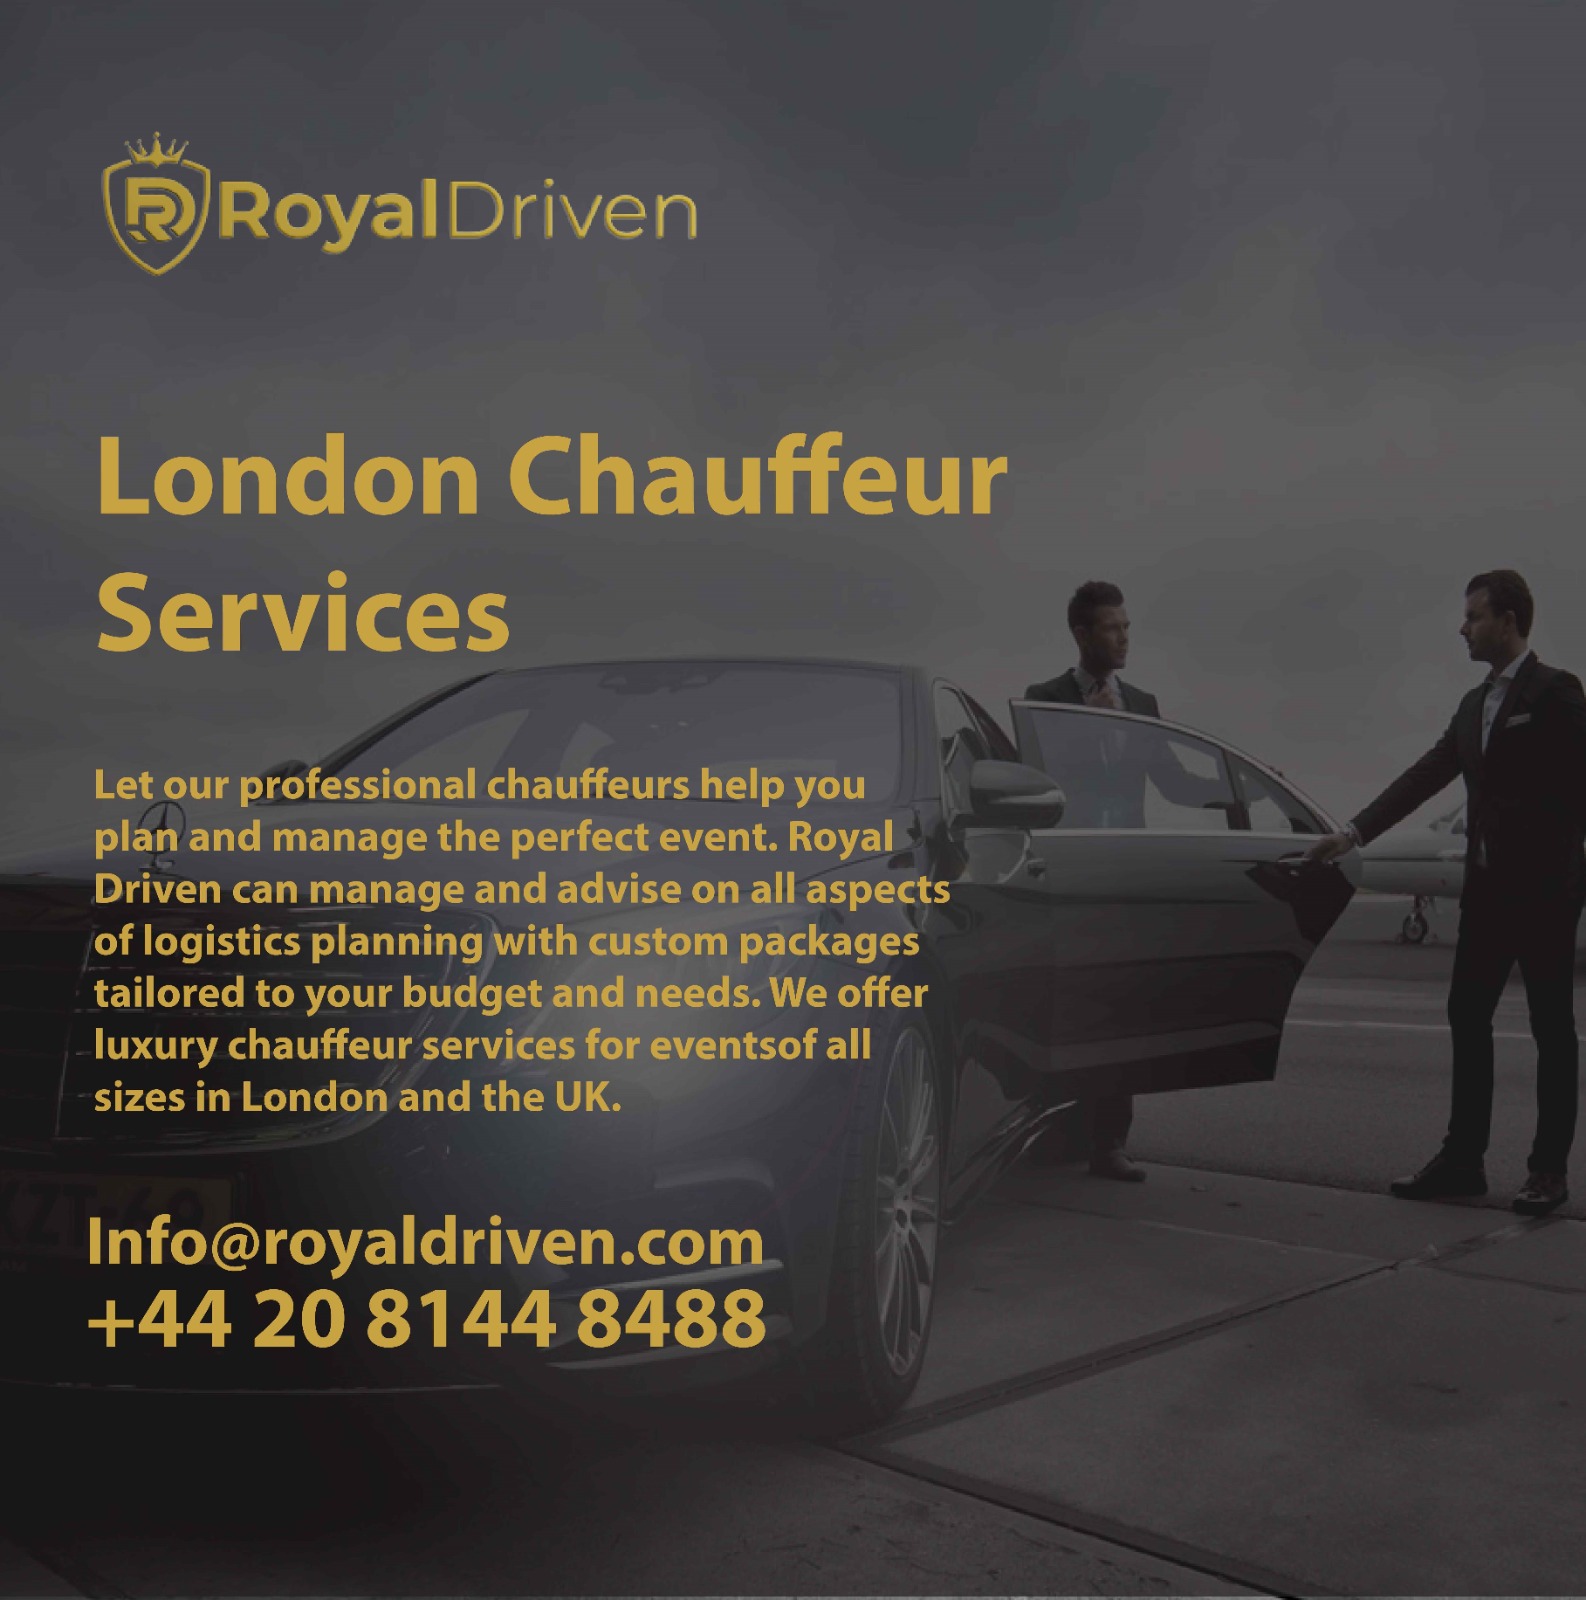 shofer driver, chauffeur service near me, chauffeur service london, london chauffeur services,